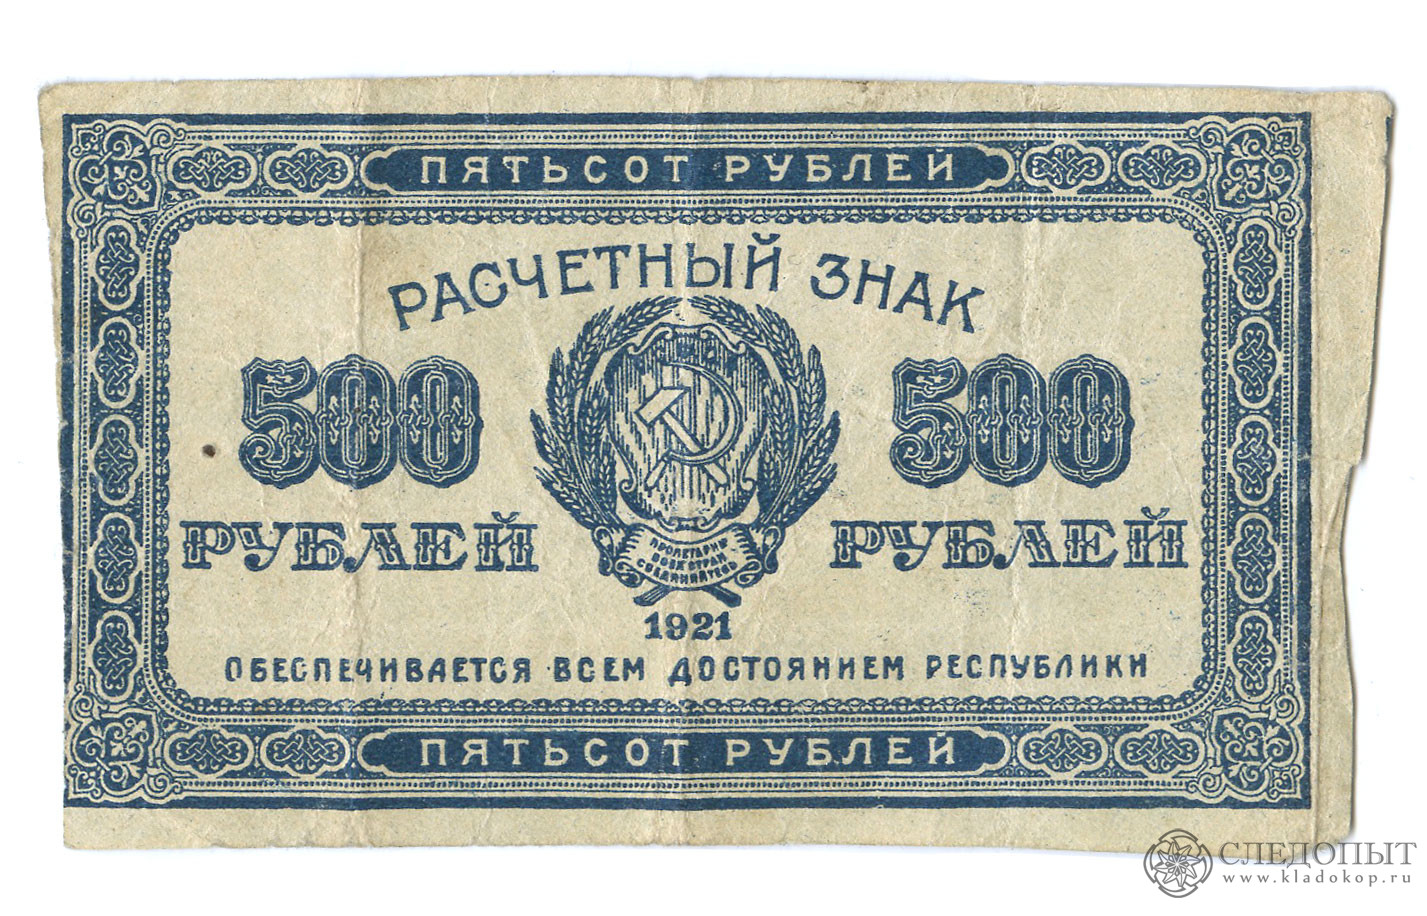 4 500 в рублях. 500 Рублей 1921. 500 Руб 1921. Купюры 1921. Банкнота 100 рублей 1921.